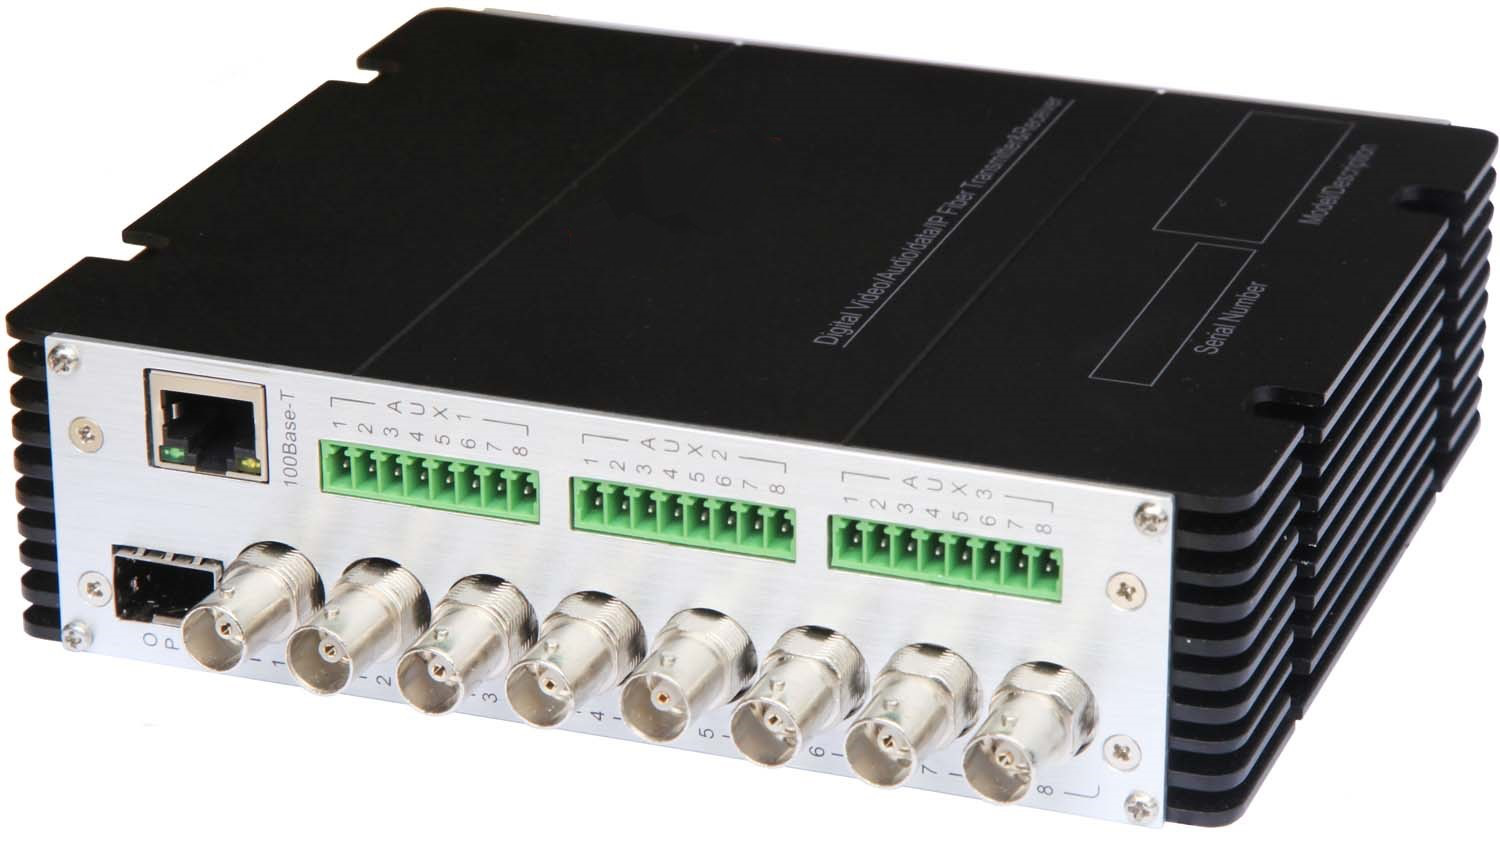 8路单向HD-SDI视频+16路双向数据+以太网综合业务数字视频光端机